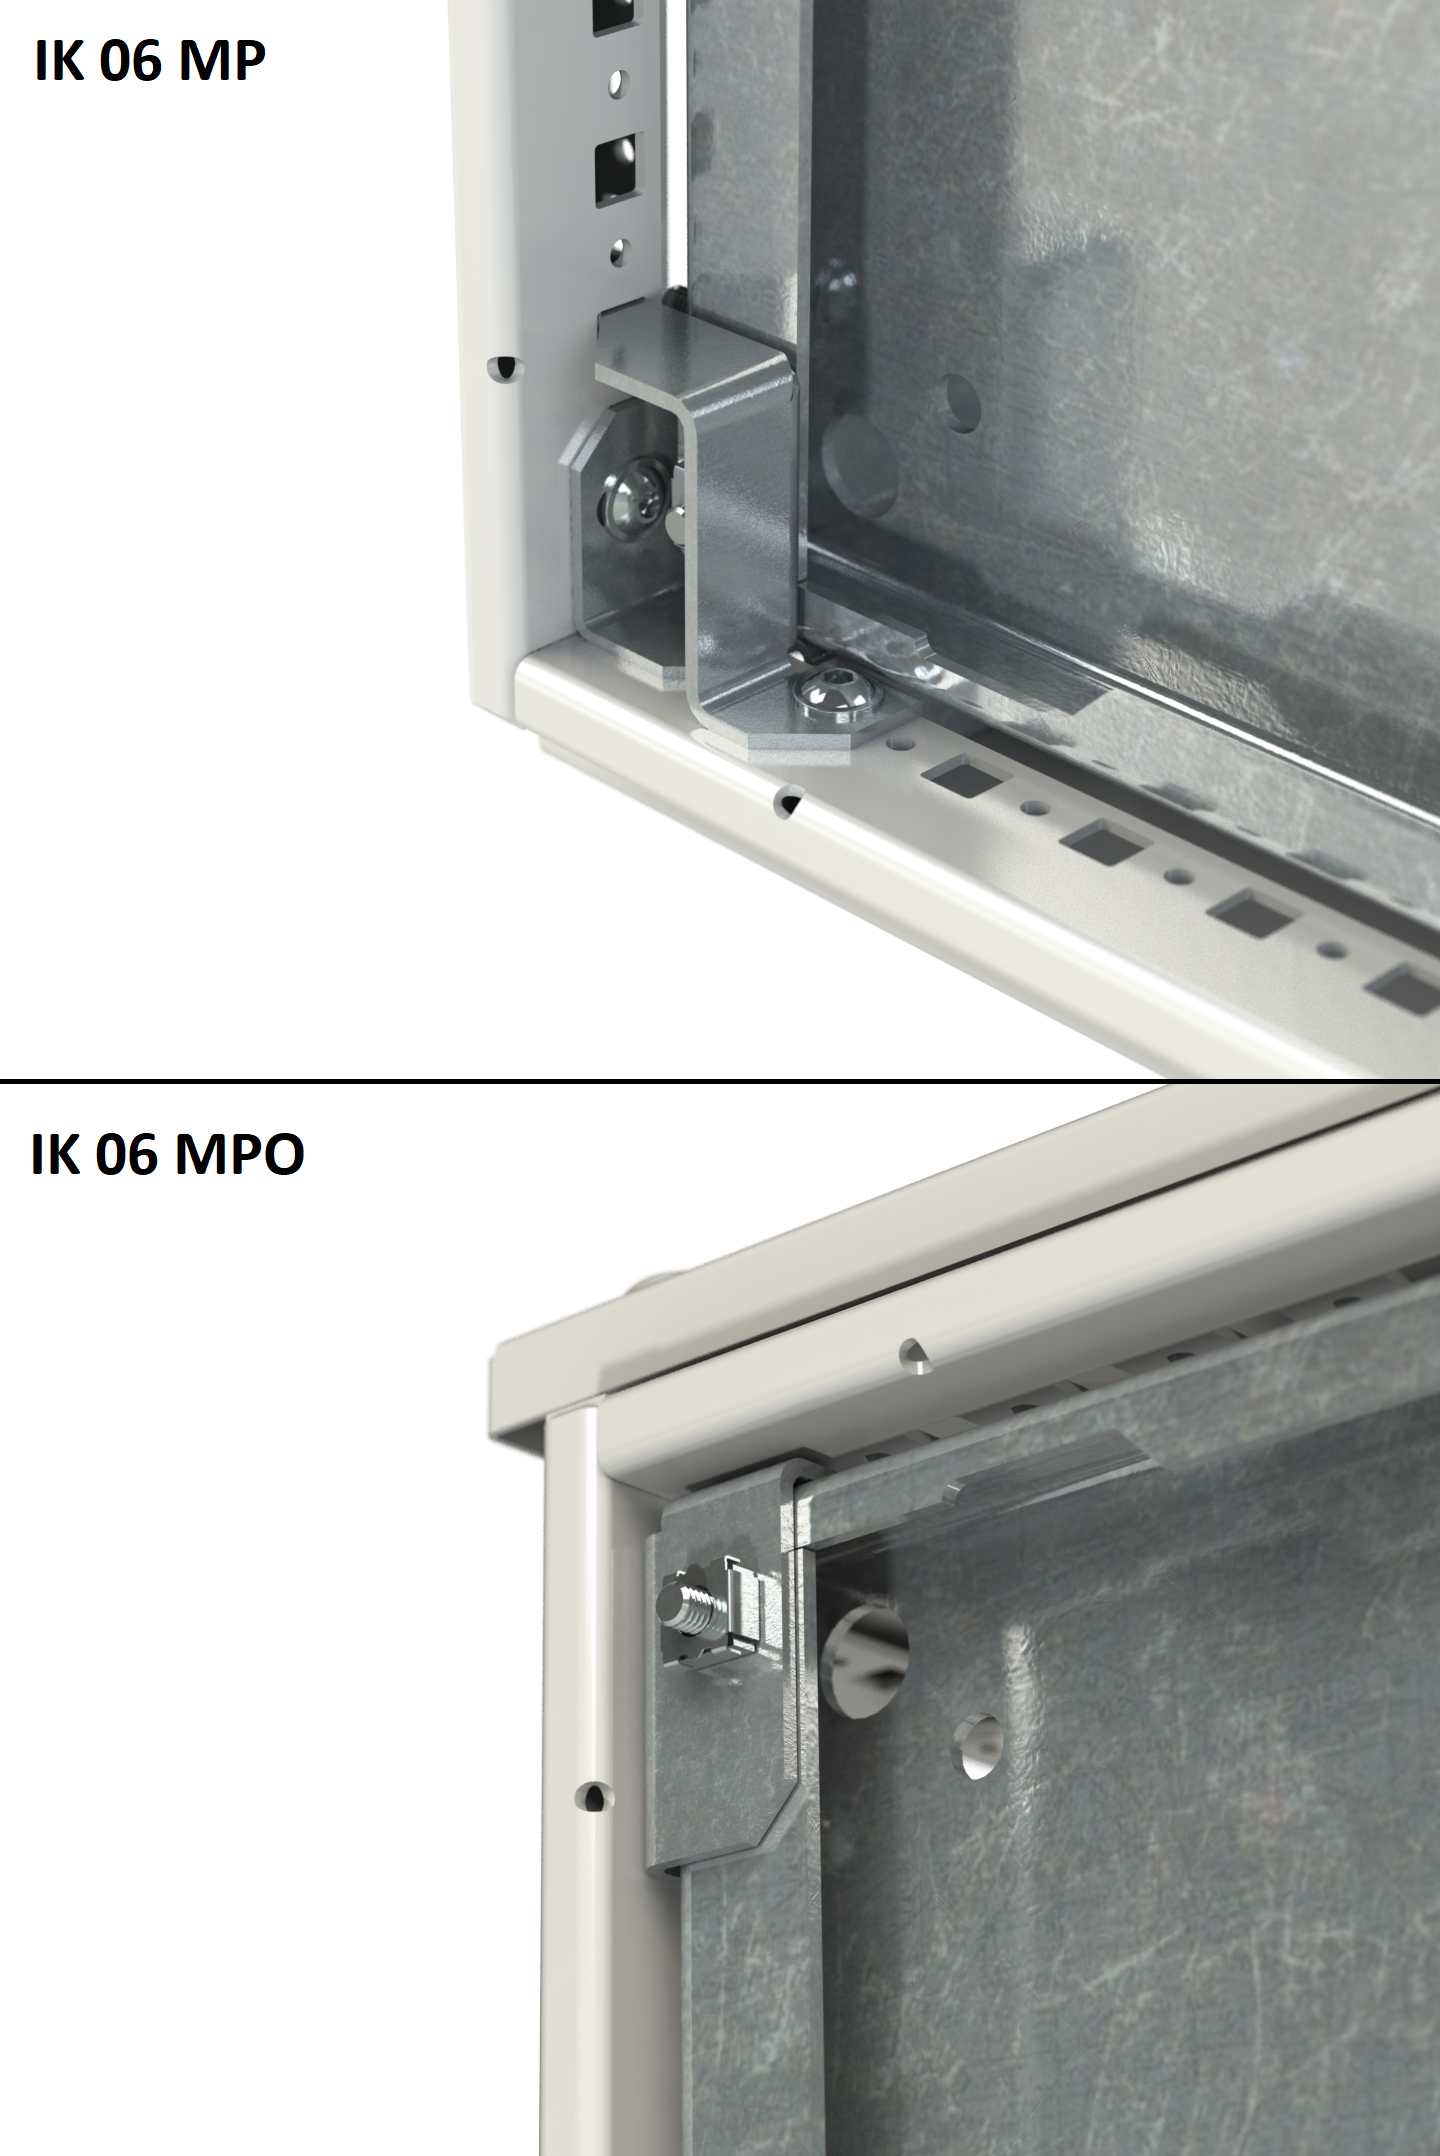 Комплект для крепления монтажной панели (IK 06 MP)